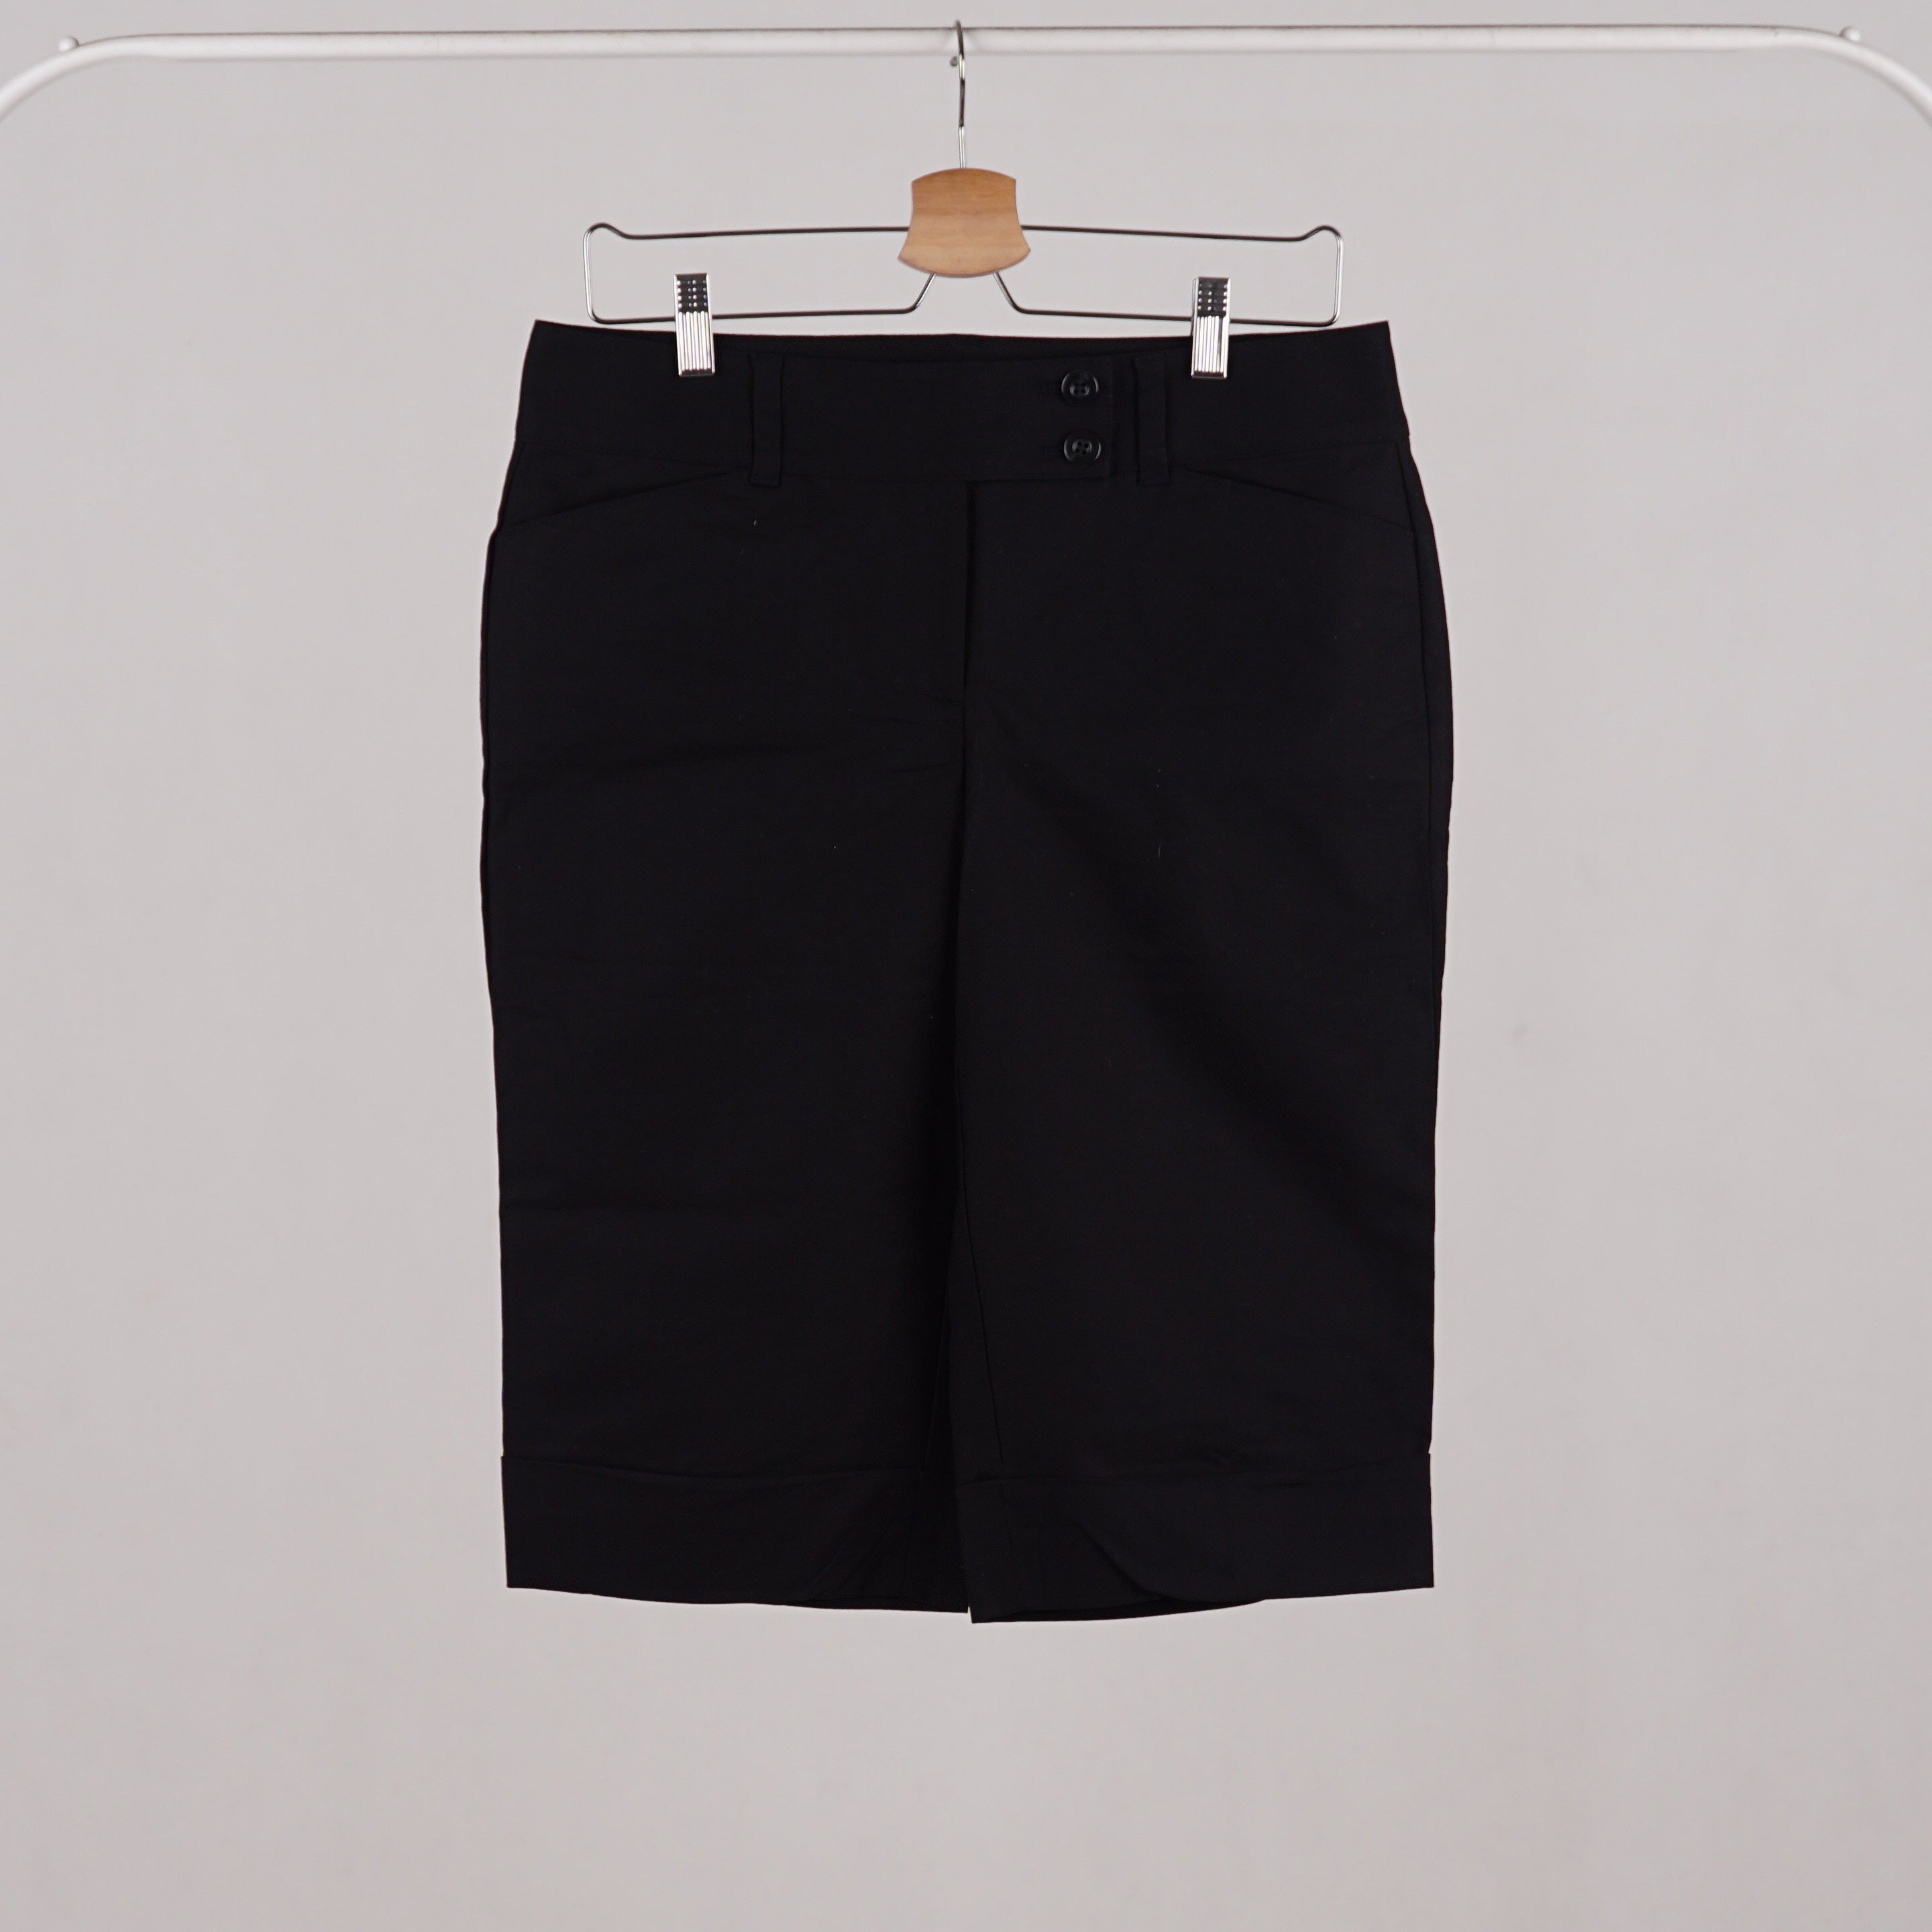 Celana 7/8 Wanita - Black 7/8 Women Pants (CHL 03)